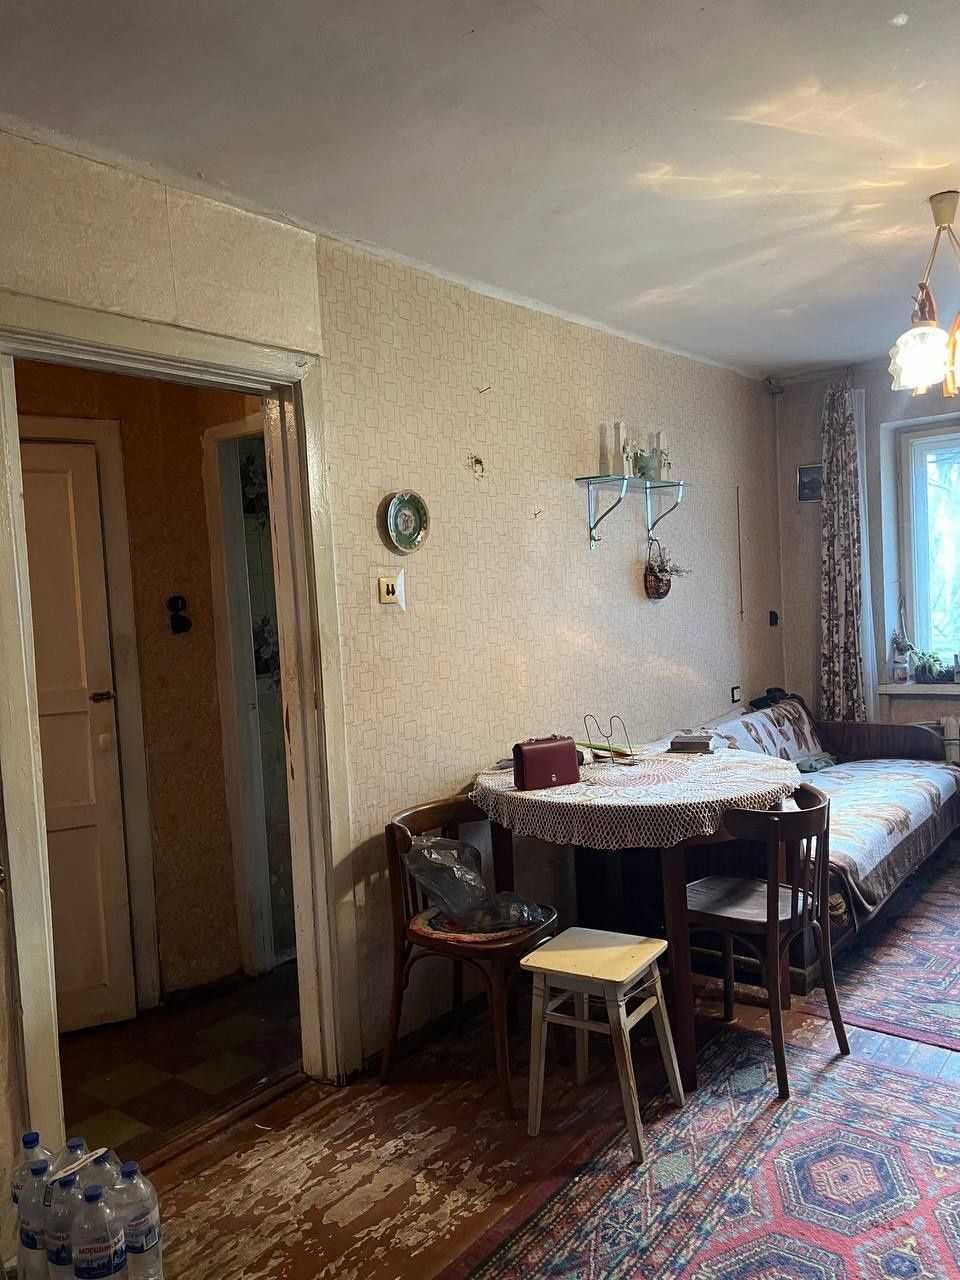 Продам 2-комнатную квартиру по ул.Варненской на Черёмушках!